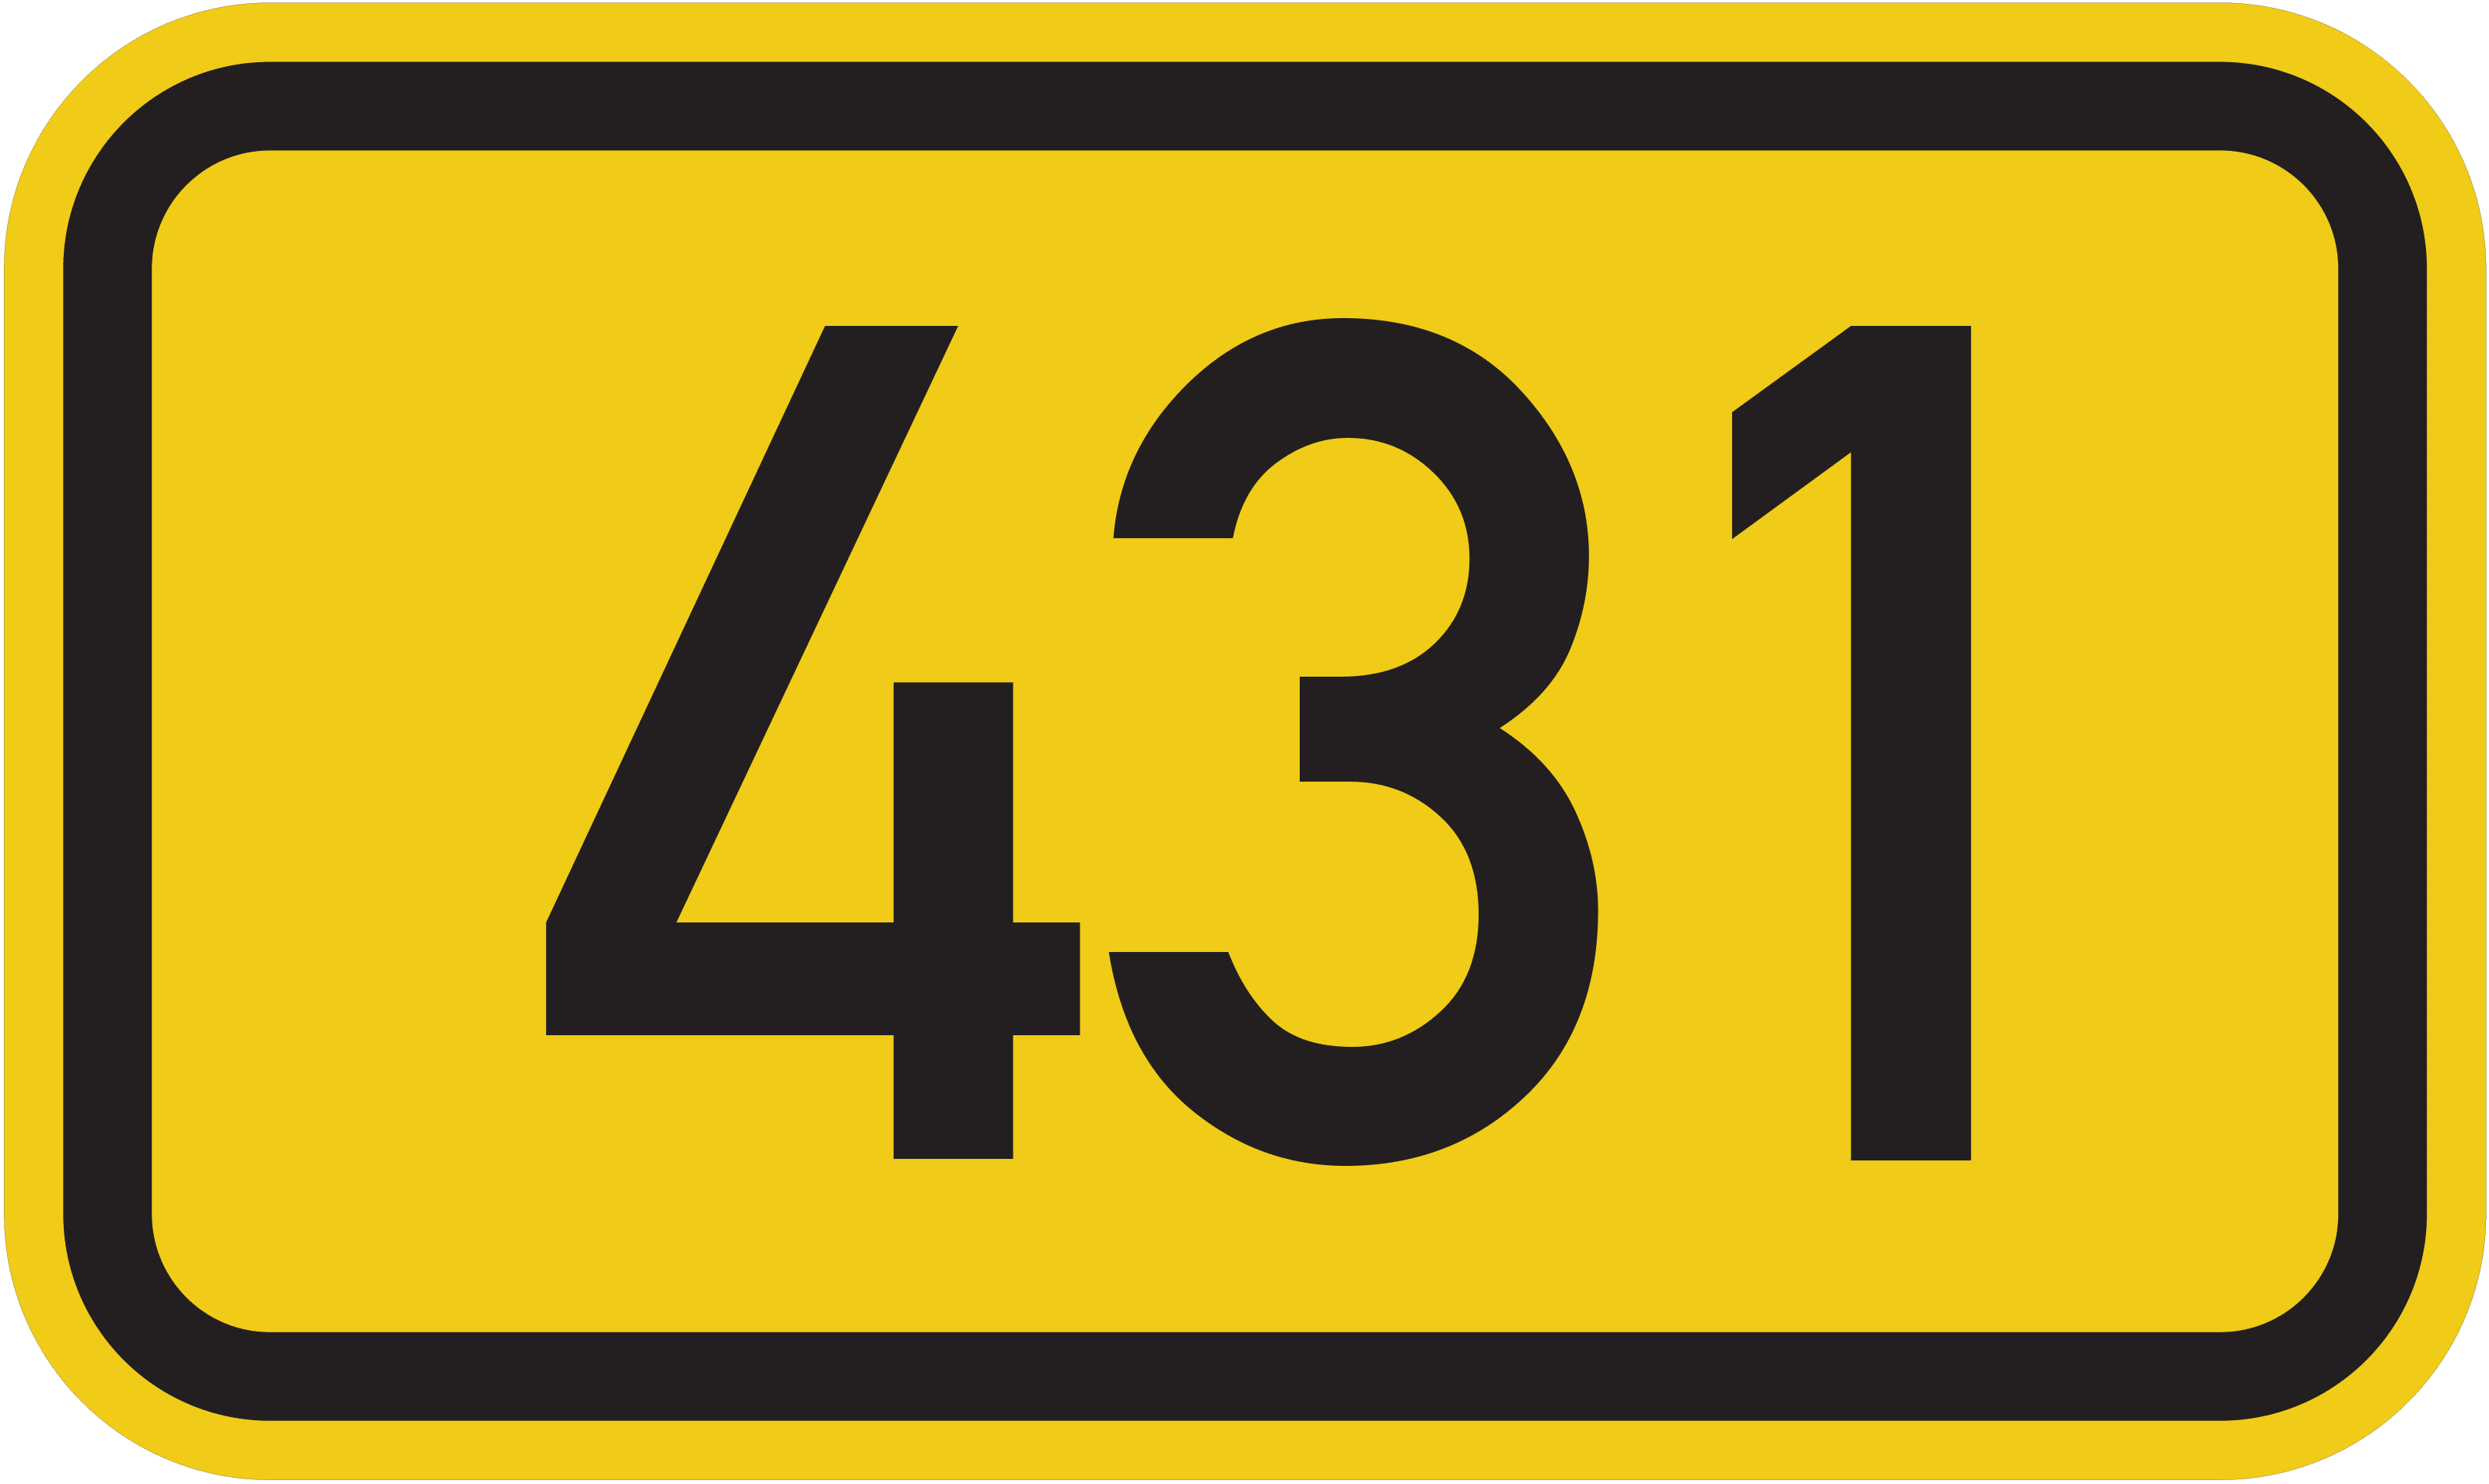 Bundesstraße B 431